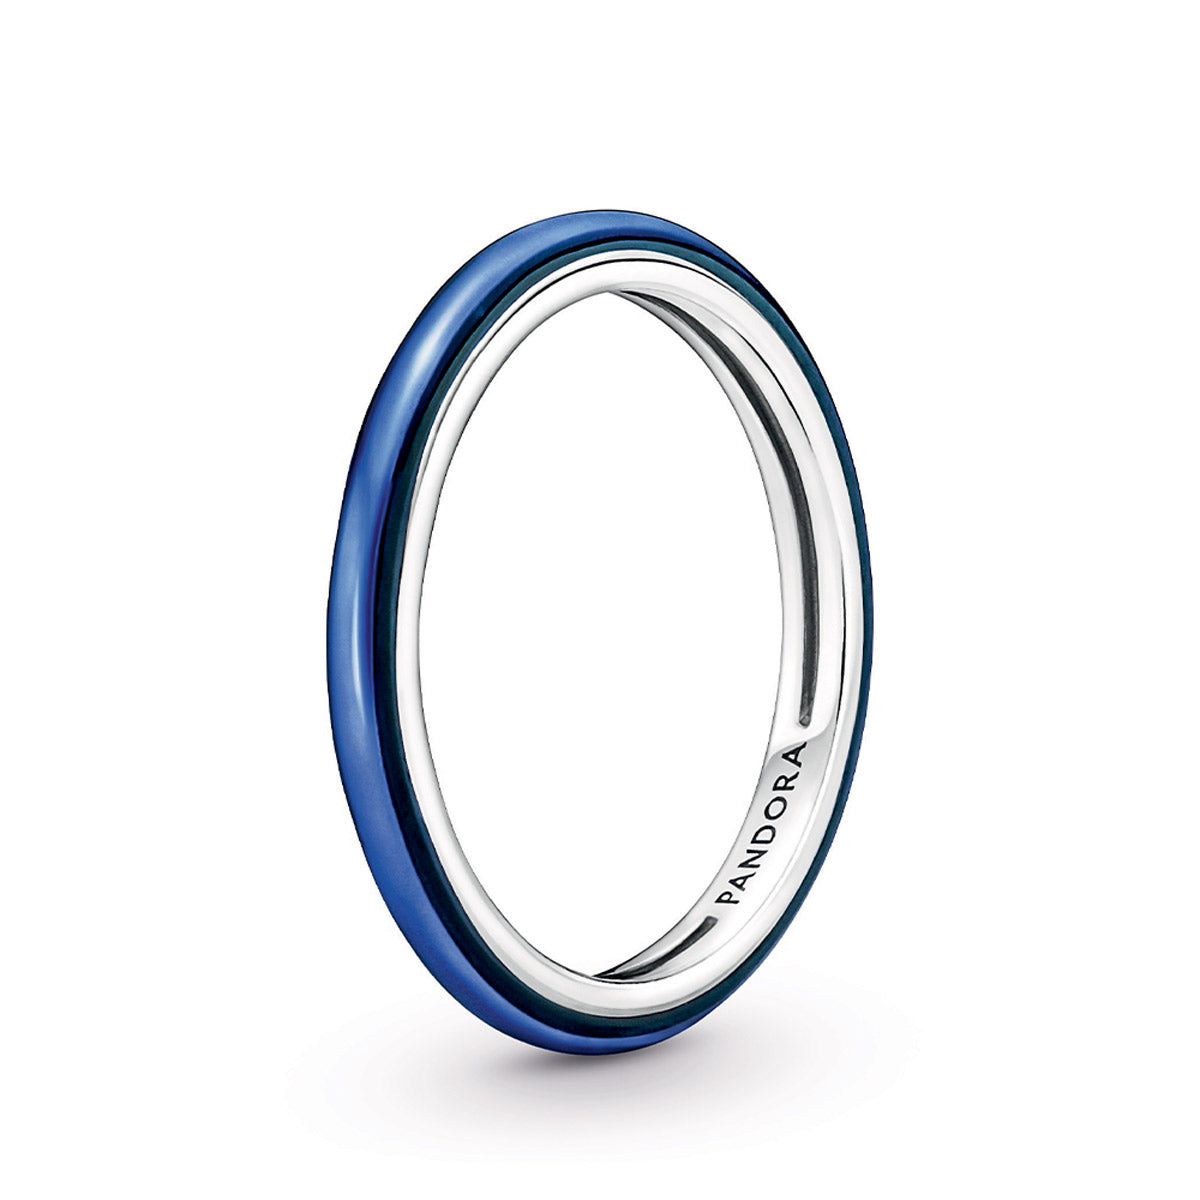 Pandora ME - Electric Blue Ring